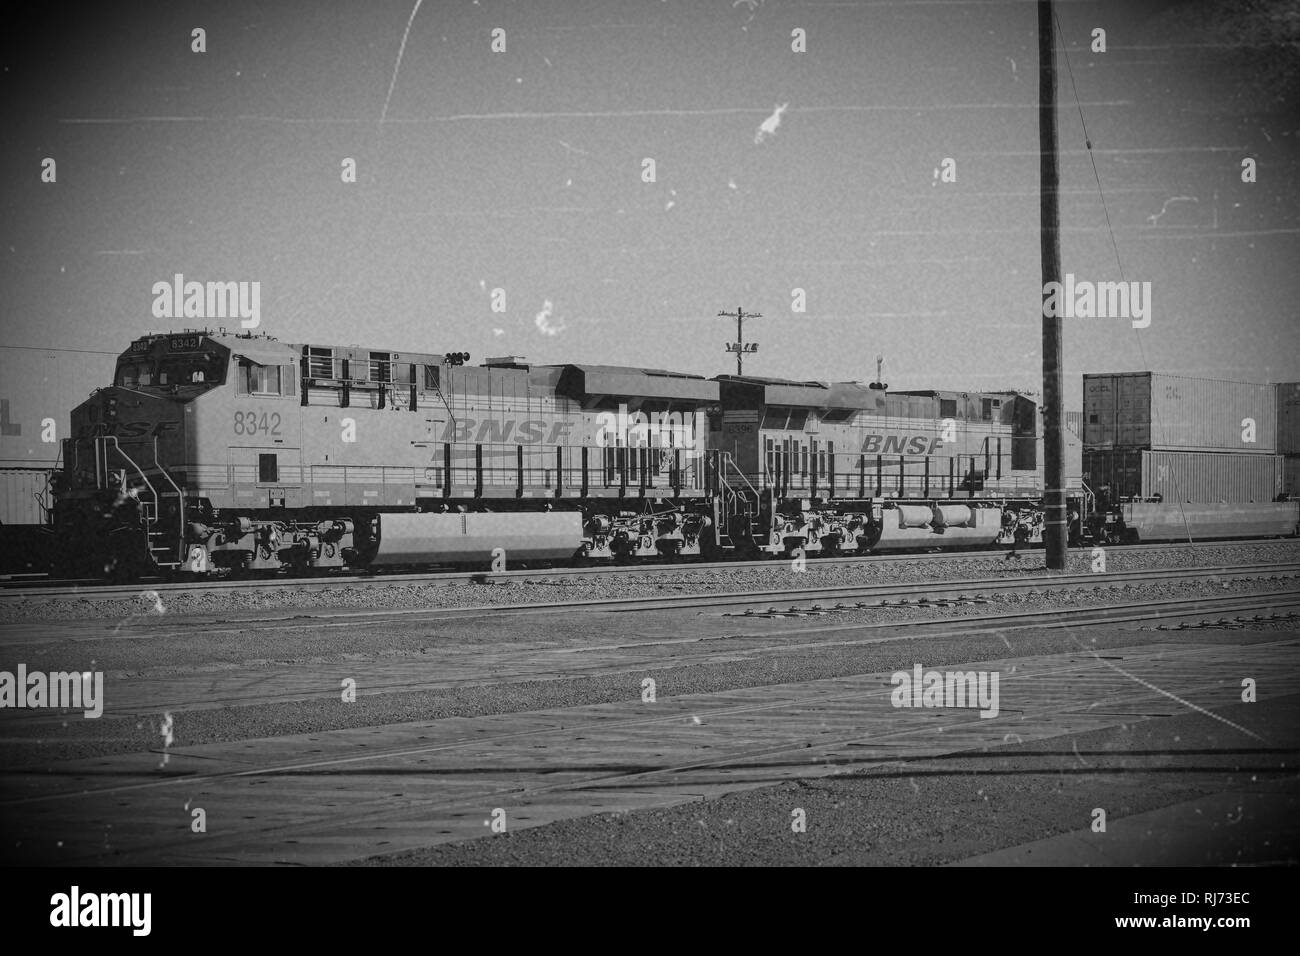 Aghi, Vereinigte Staaten, ein Güterzug mit einer General Electric Dash 9 Lokomotive der BNSF Eisenbahn Gesellschaft und Containern steht auf einem Foto Stock